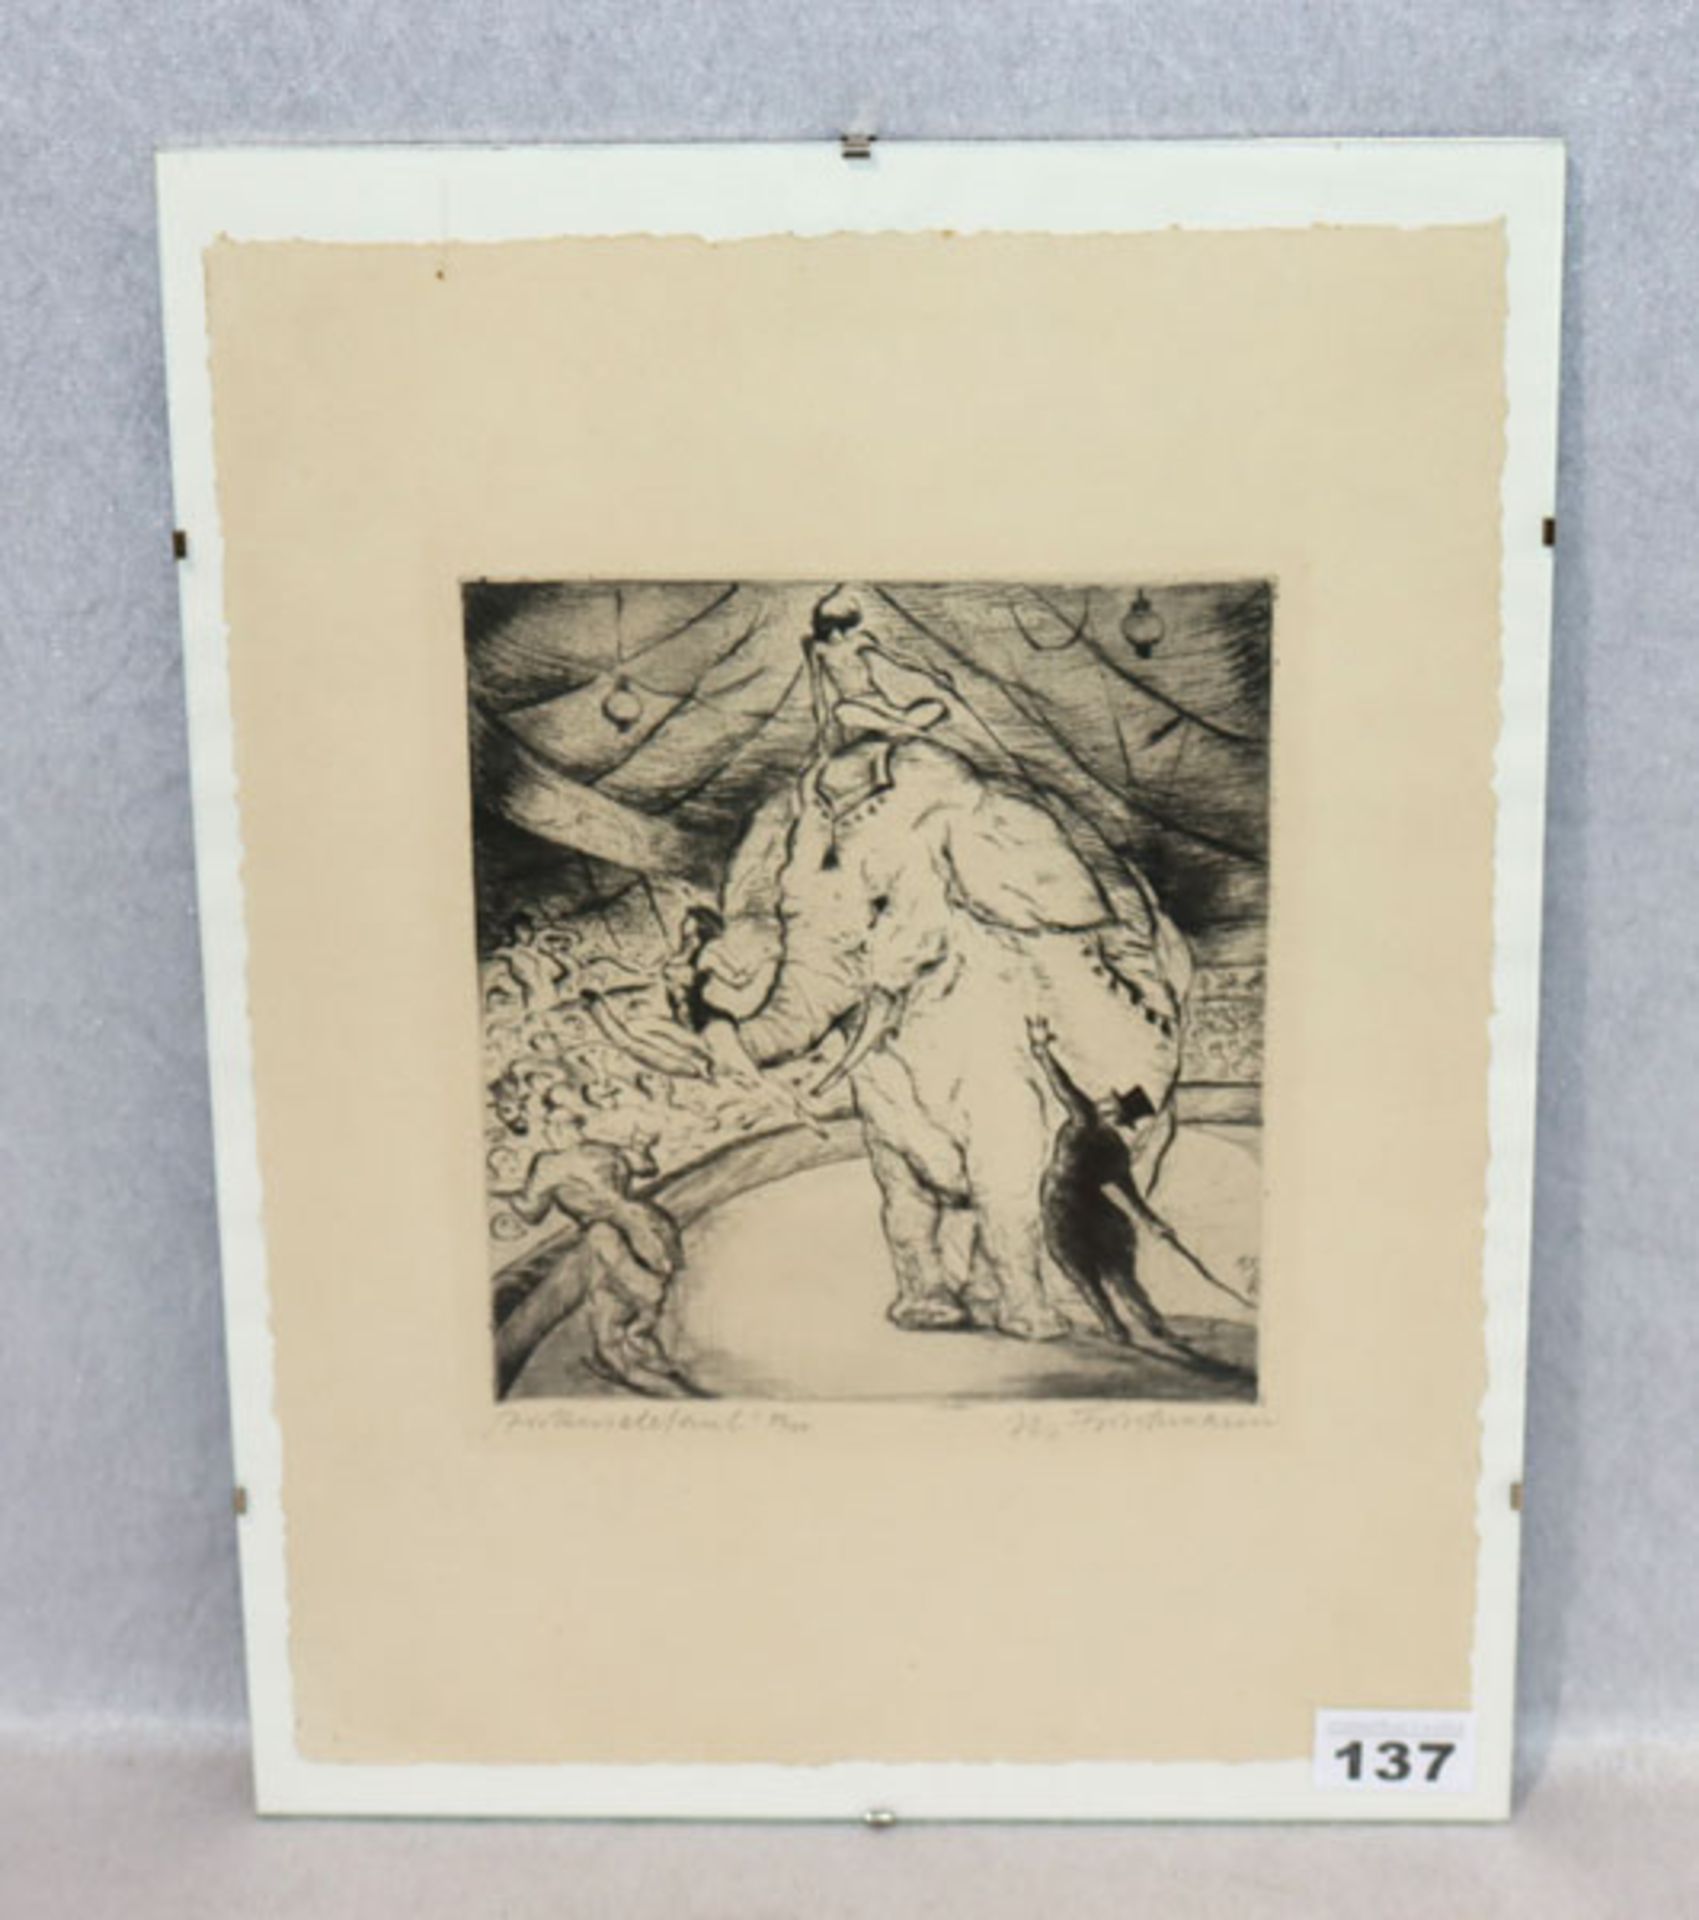 Lithografie 'Zirkuselefant', Nr. 83/100, signiert, M. Frischmann, Marcel Frischmann, * 1900 +